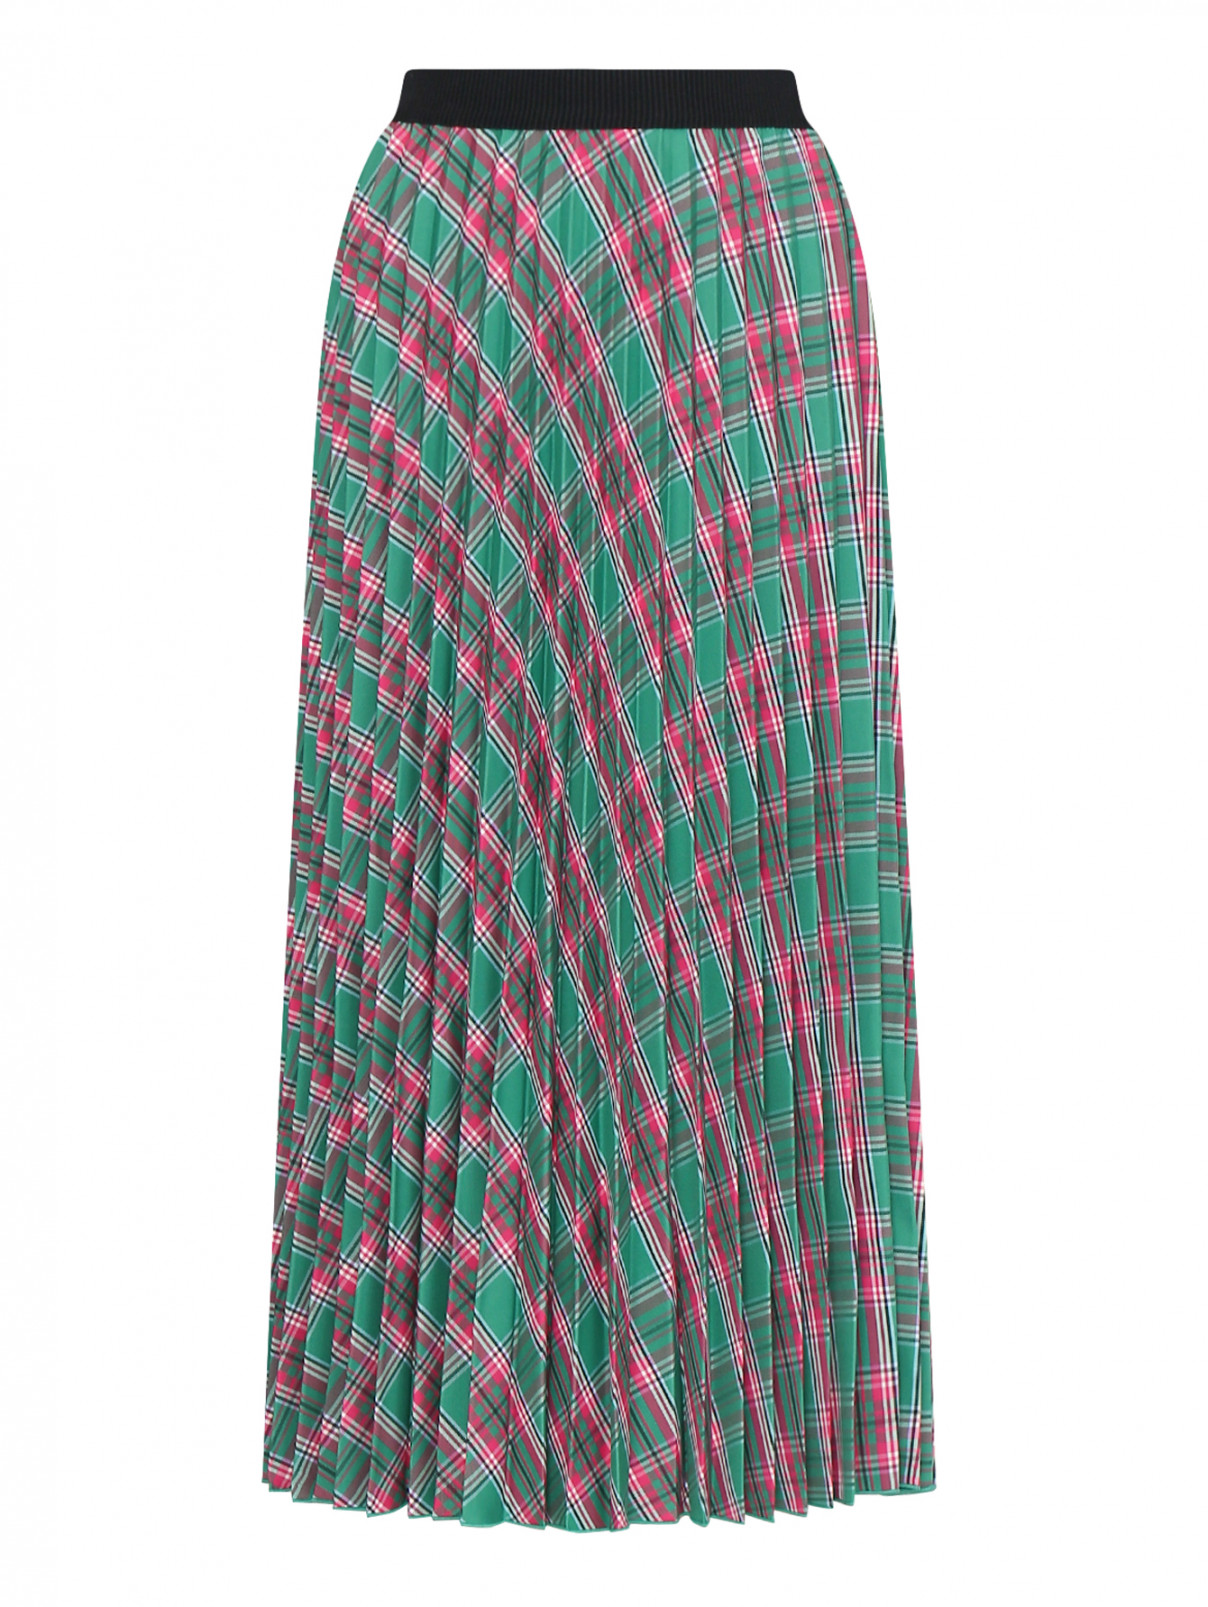 Плиссированная юбка в клетку Moncler  –  Общий вид  – Цвет:  Зеленый